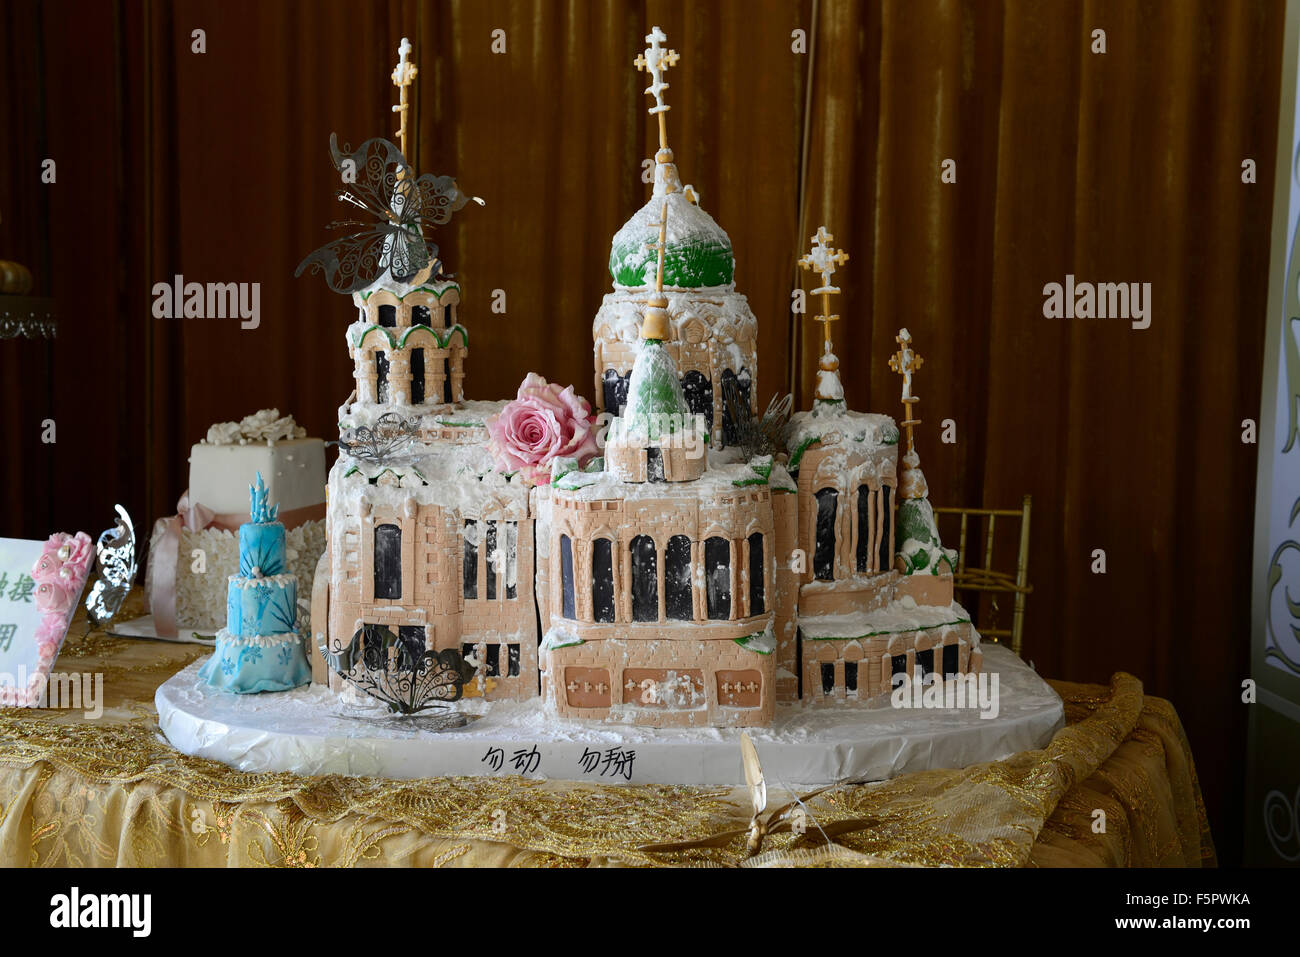 Gâteau de mariage complexe édifice religieux église cathédrale orthodoxe d'aliments comestibles célébration célébrer Harbin Chine Monde RM Banque D'Images